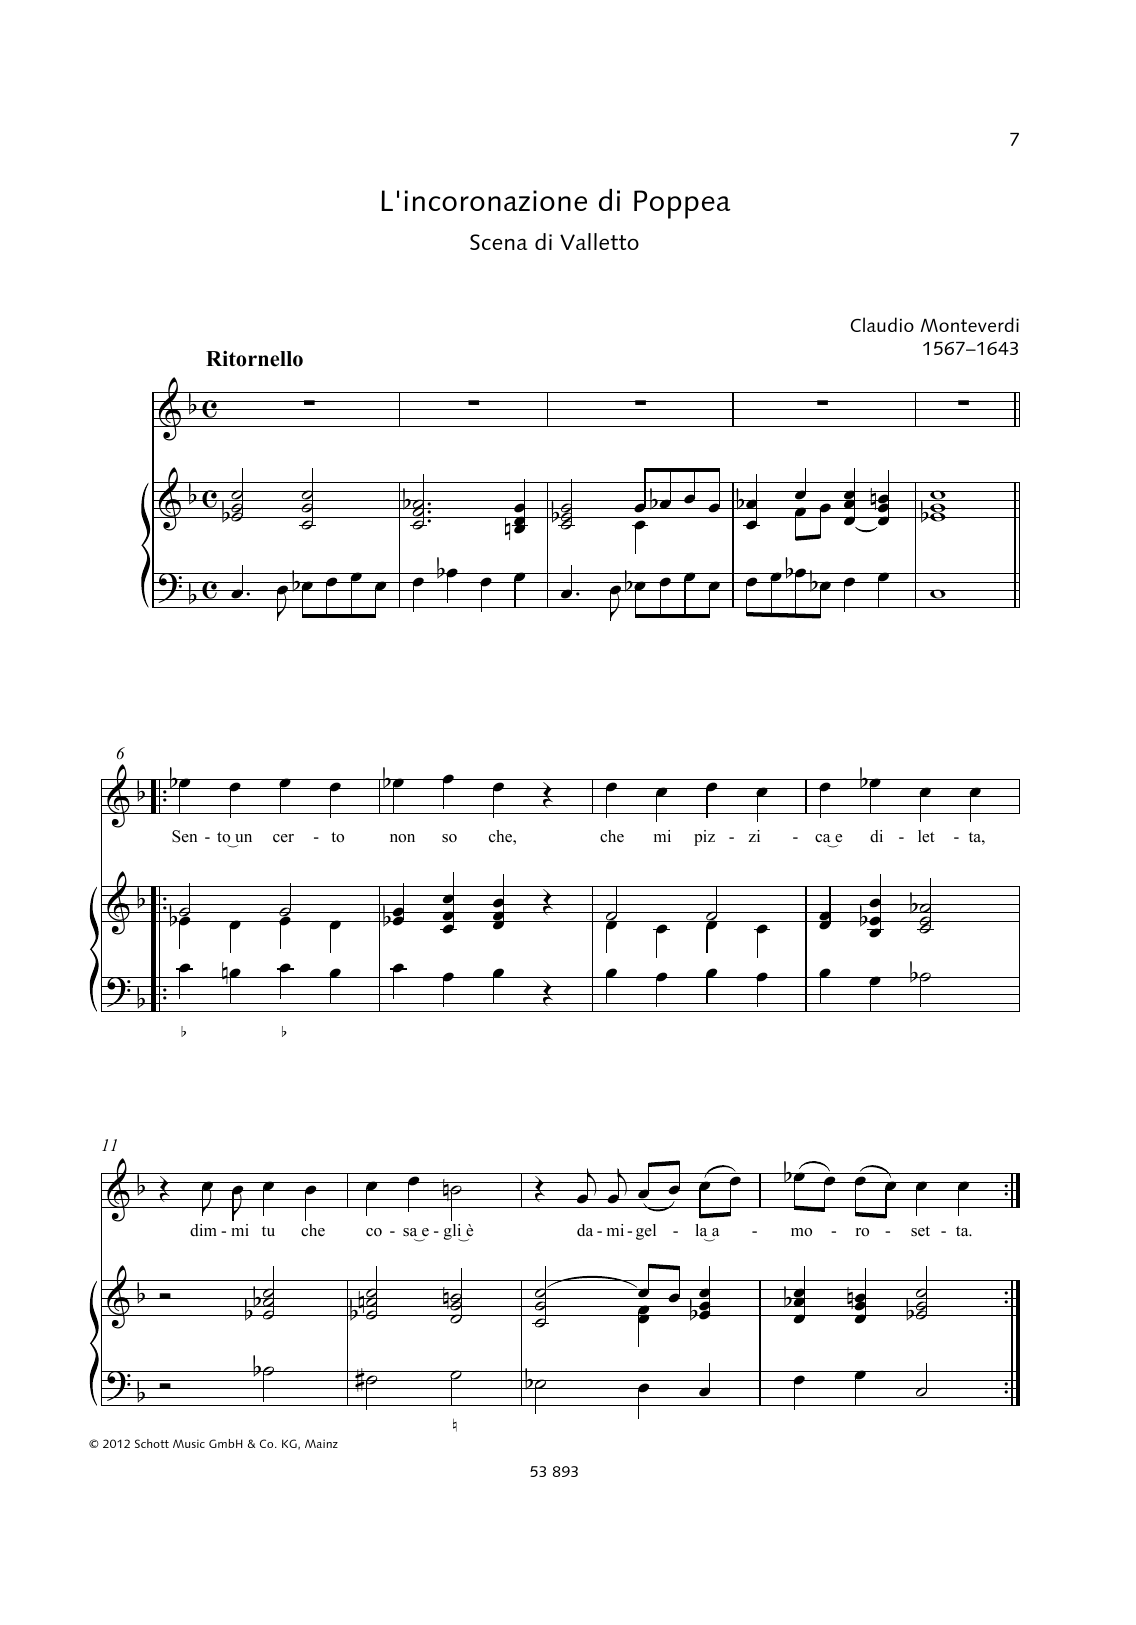 Download Claudio Monteverdi Sento un certo non so che Sheet Music and learn how to play Piano & Vocal PDF digital score in minutes